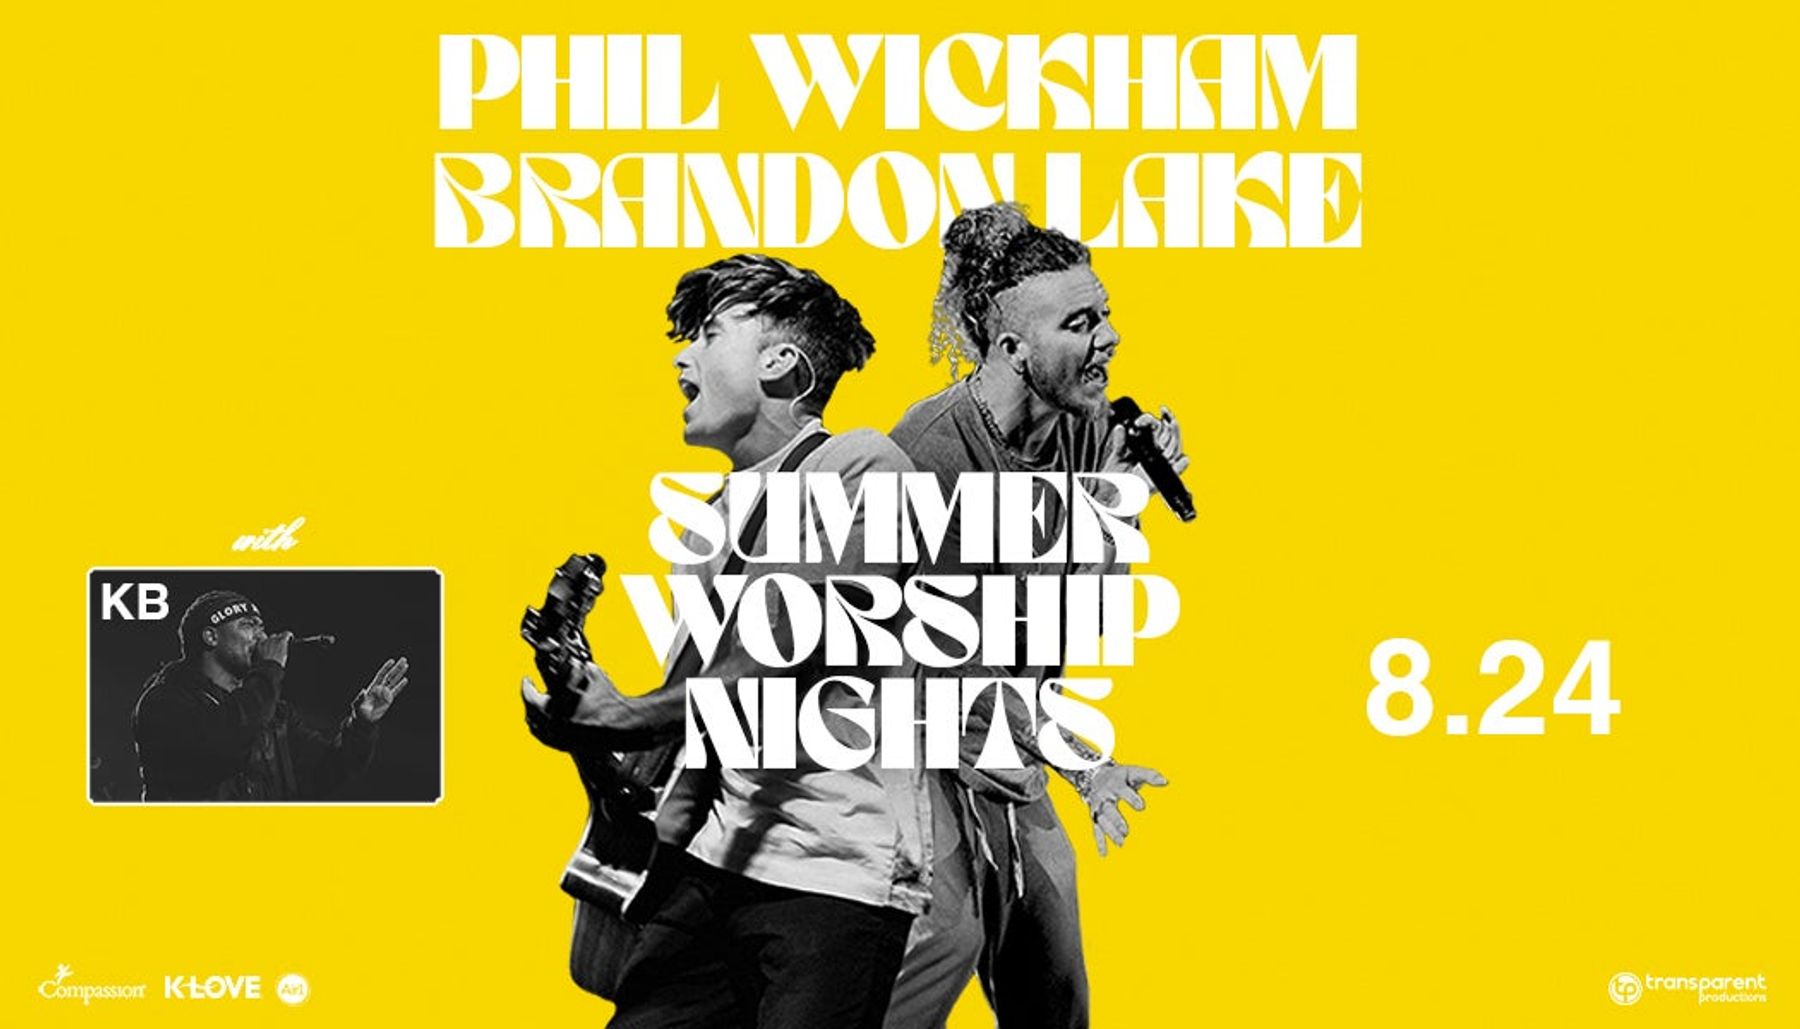 Phil Wickham & Brandon Lake Summer Worship Nights Tour Downtown